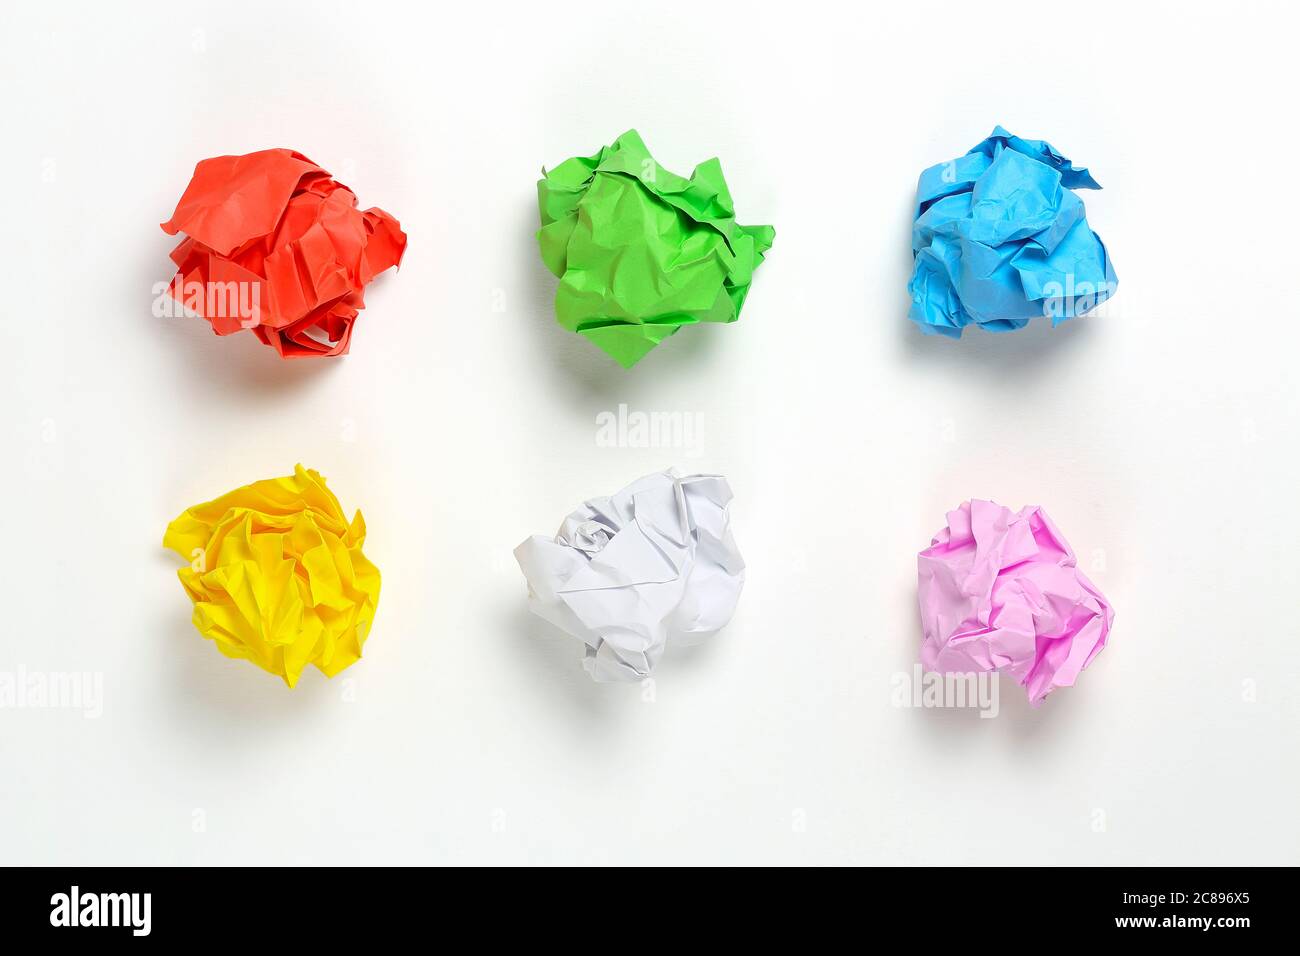 six boules de papier froissé colorées sur une surface blanche Banque D'Images